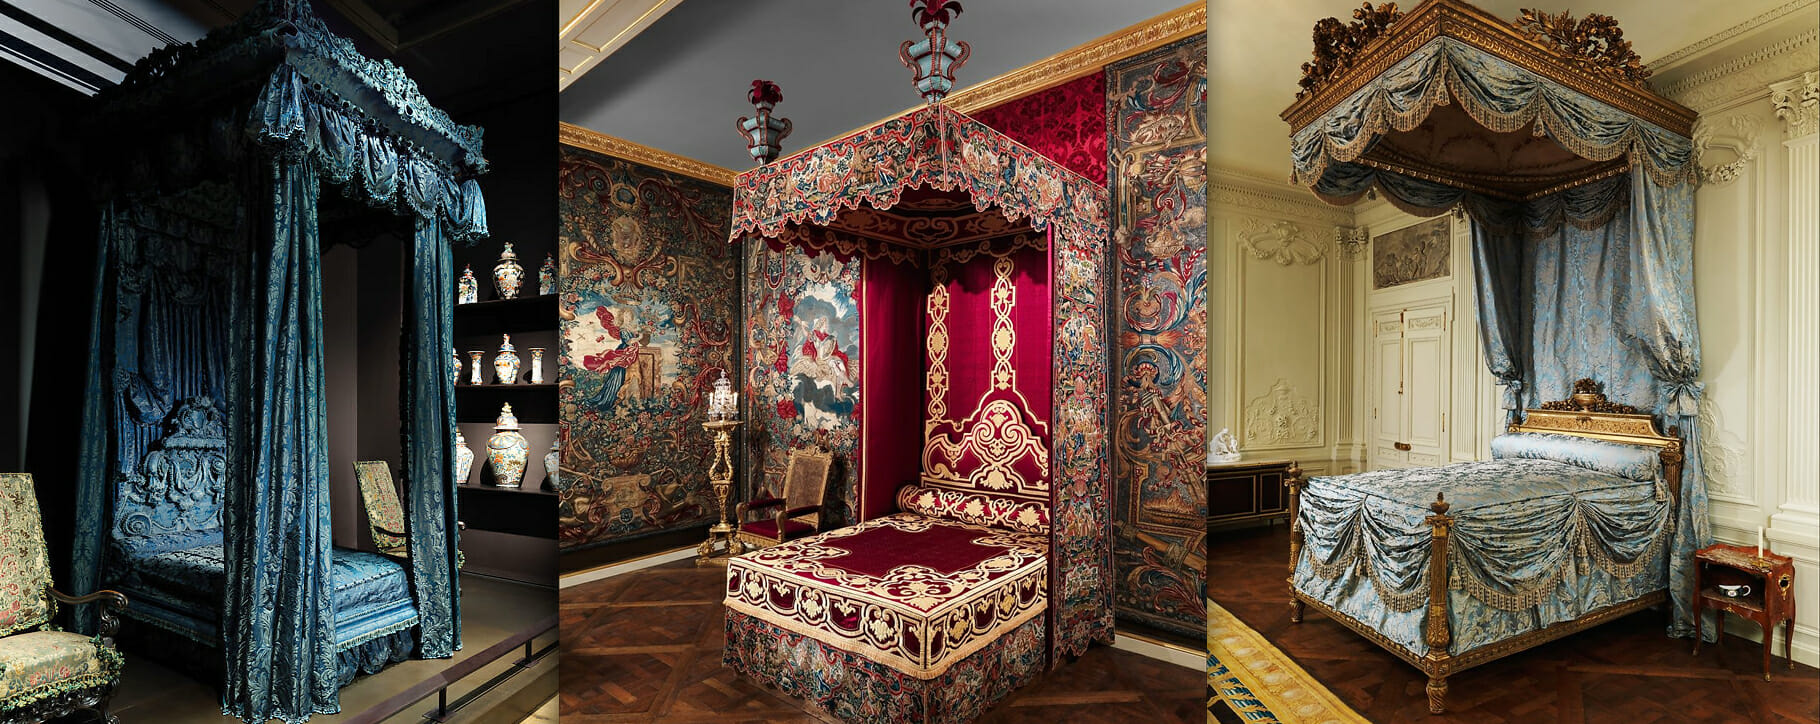 Baroque beds